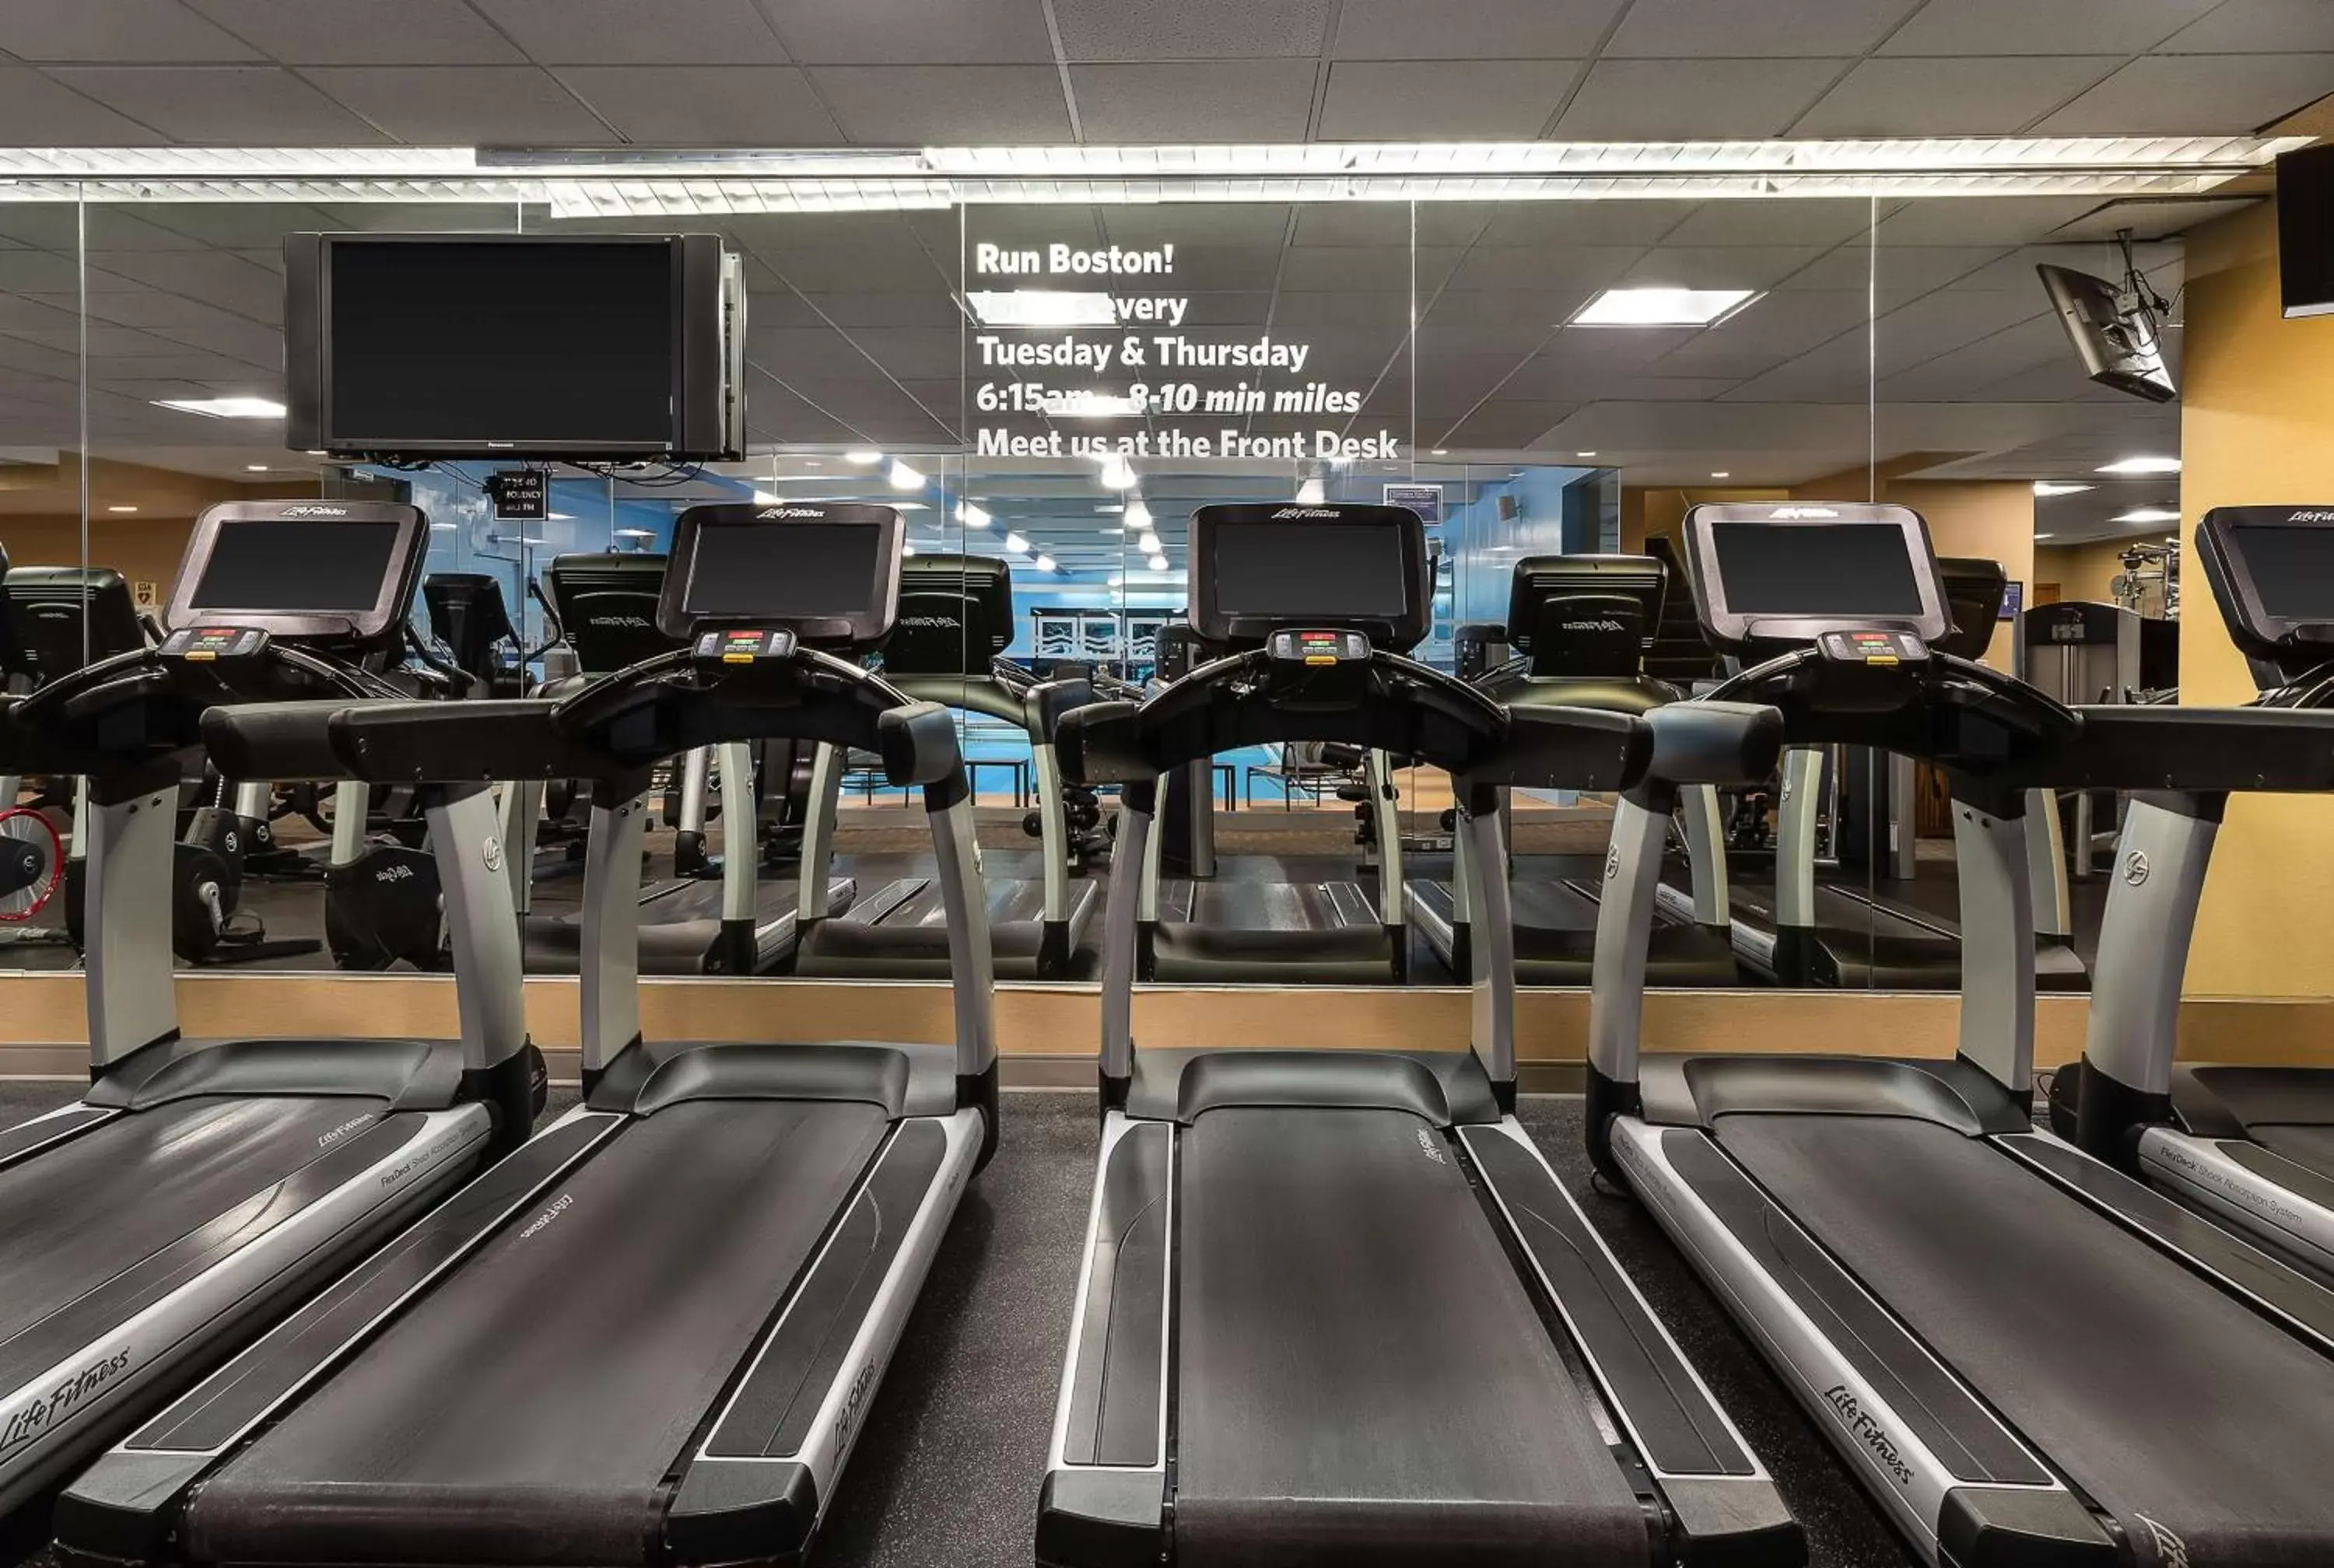 Fitness centre/facilities, Fitness Center/Facilities in Hyatt Regency Boston